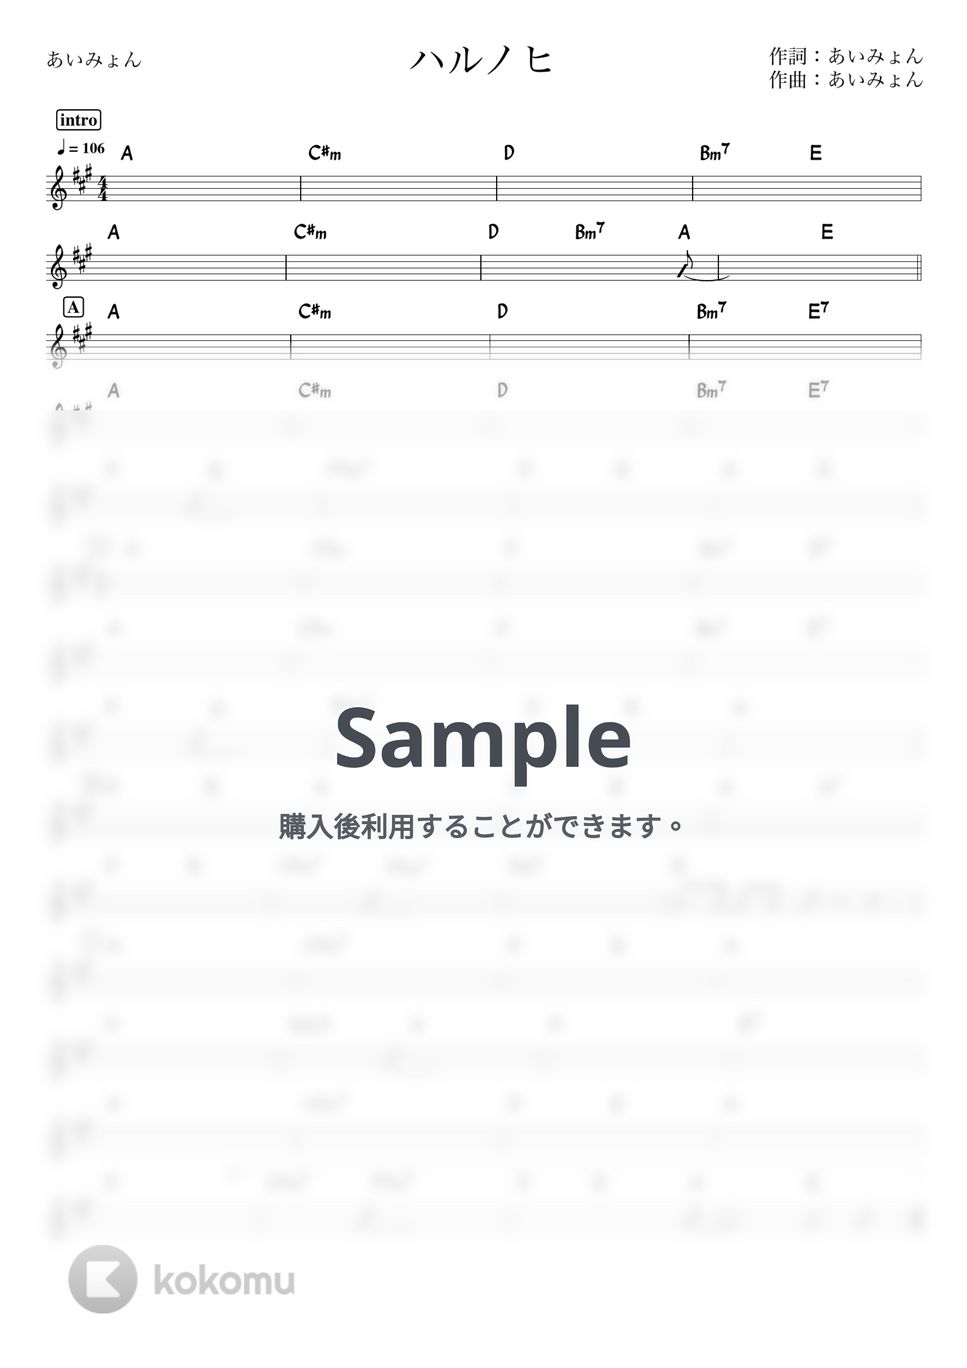 あいみょん - ハルノヒ (バンド用コード譜) by 箱譜屋